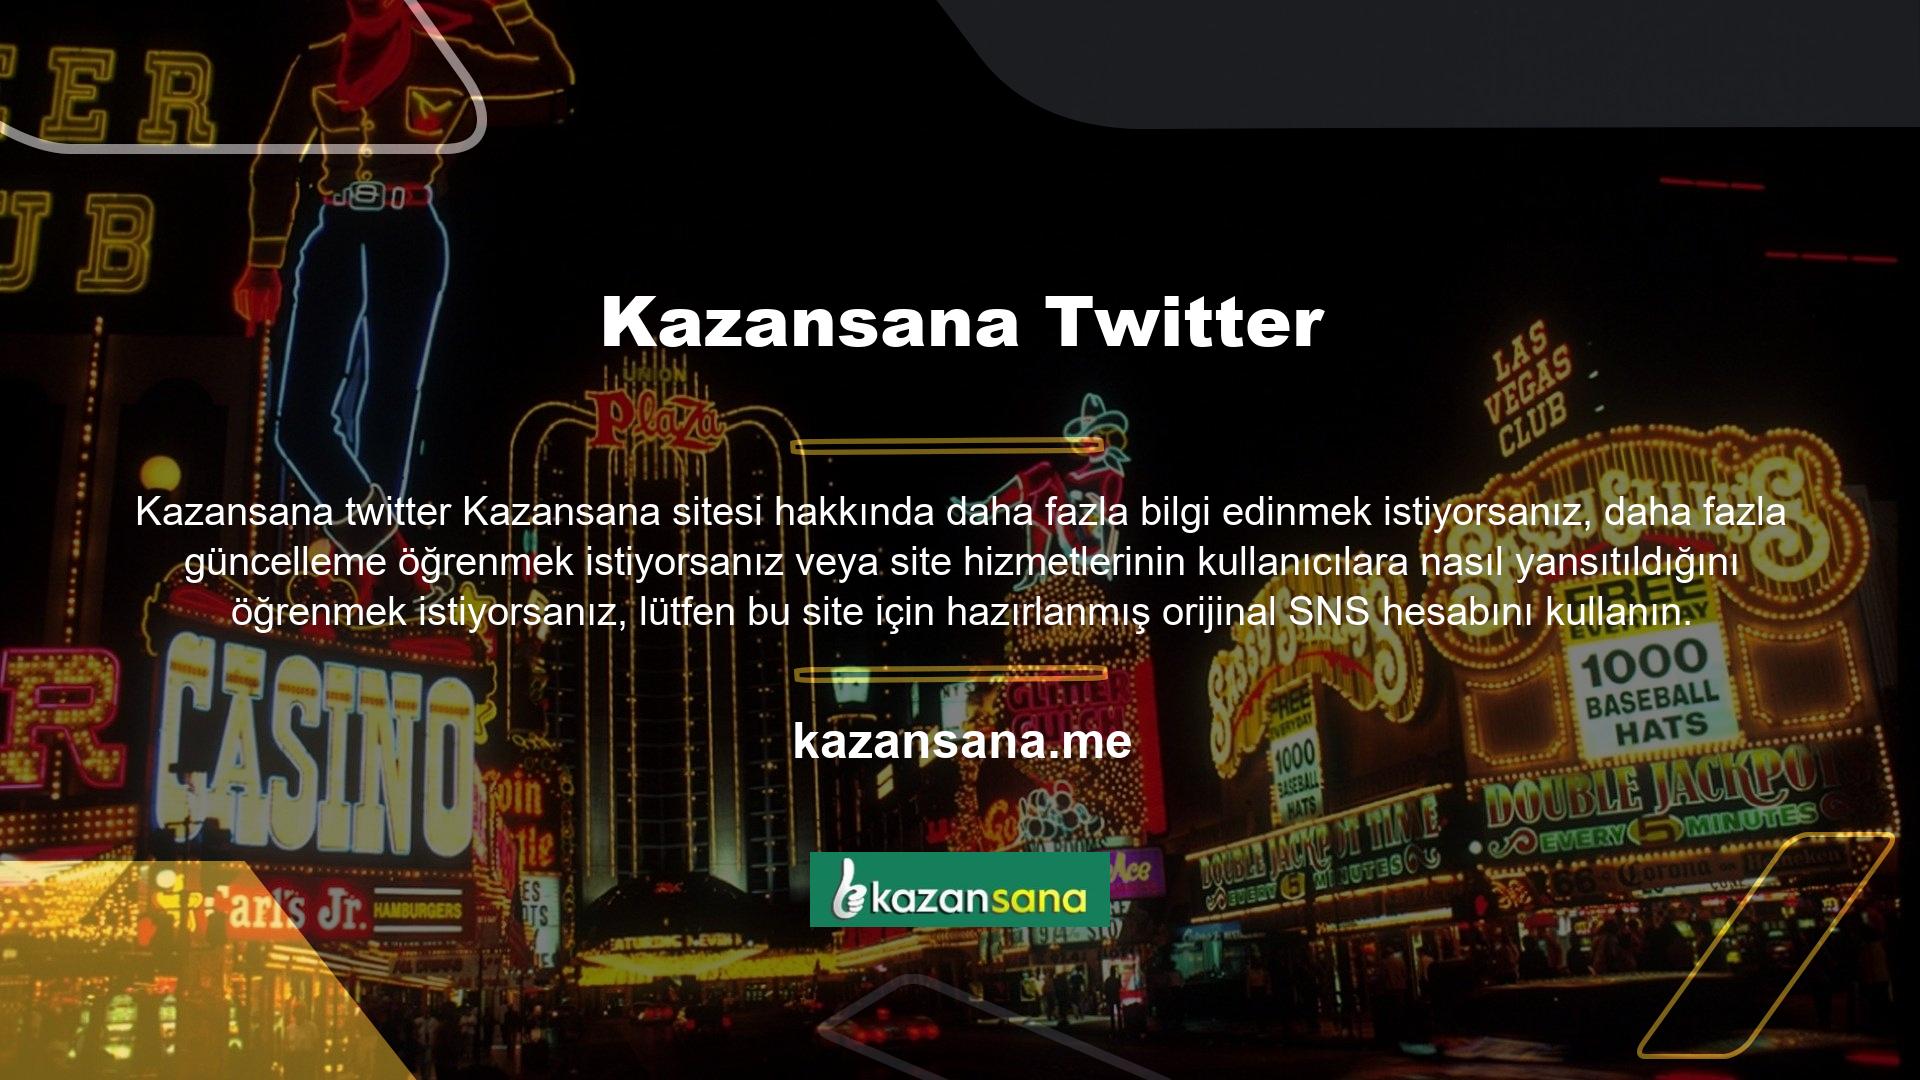 Bu seçeneklerin en ünlüsü ve güvenlisi olan Kazansana Twitter hesabı, halihazırda çeşitli sosyal medya hesaplarının kullanımda olmasıyla birleşecek gibi görünüyor